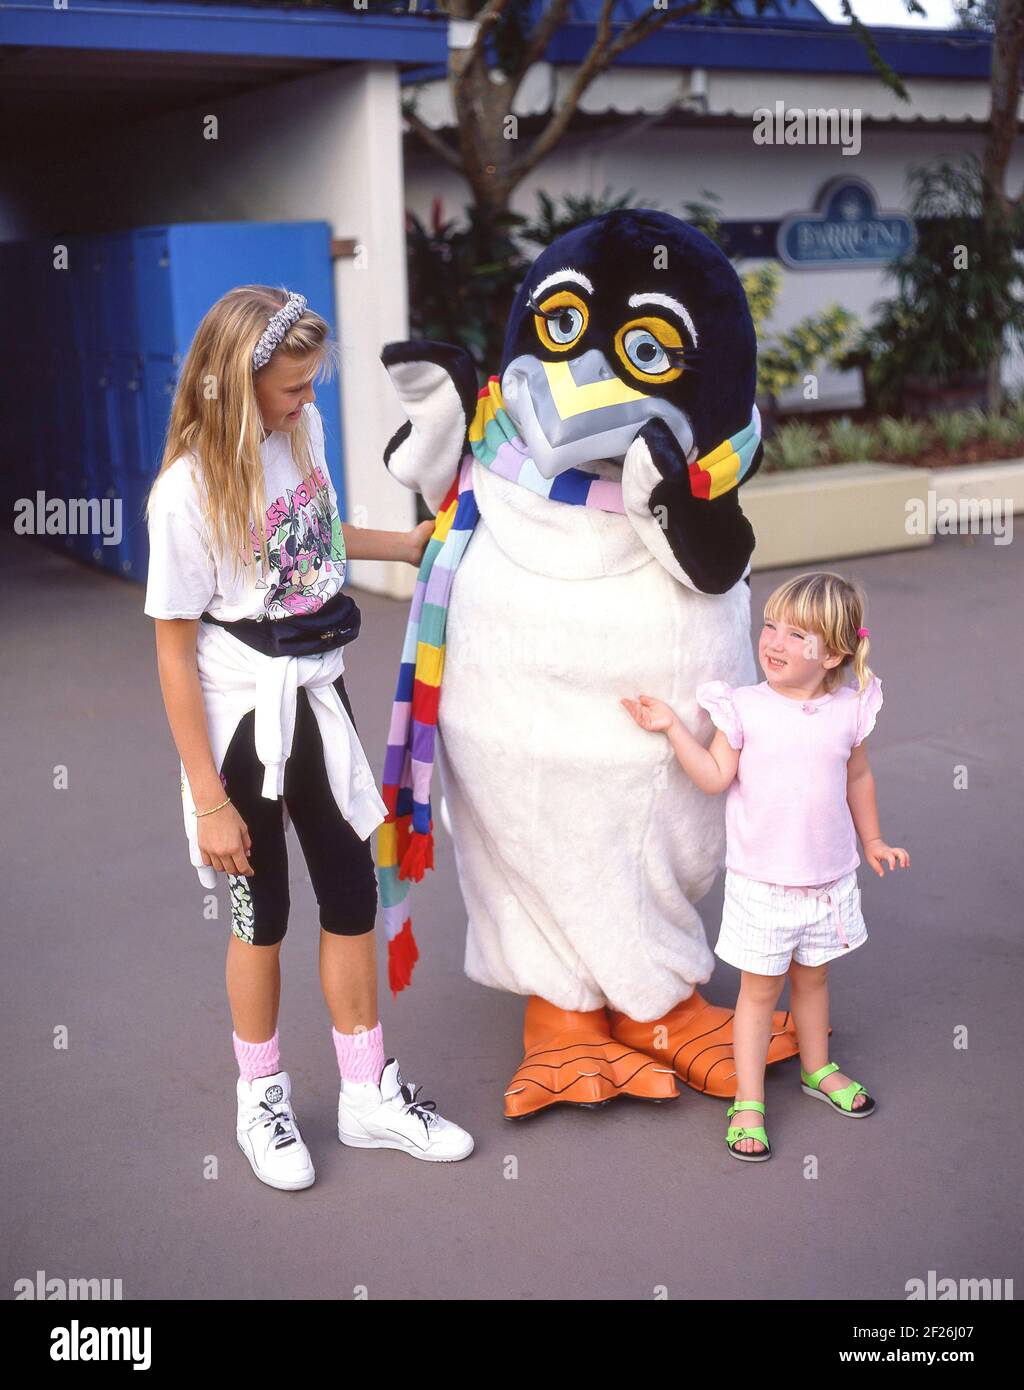 Junge Mädchen mit Pinguin-Charakter im Warner Bros Movie World Theme Park, Oxenford, City of Gold Coast, Queensland, Australien Stockfoto